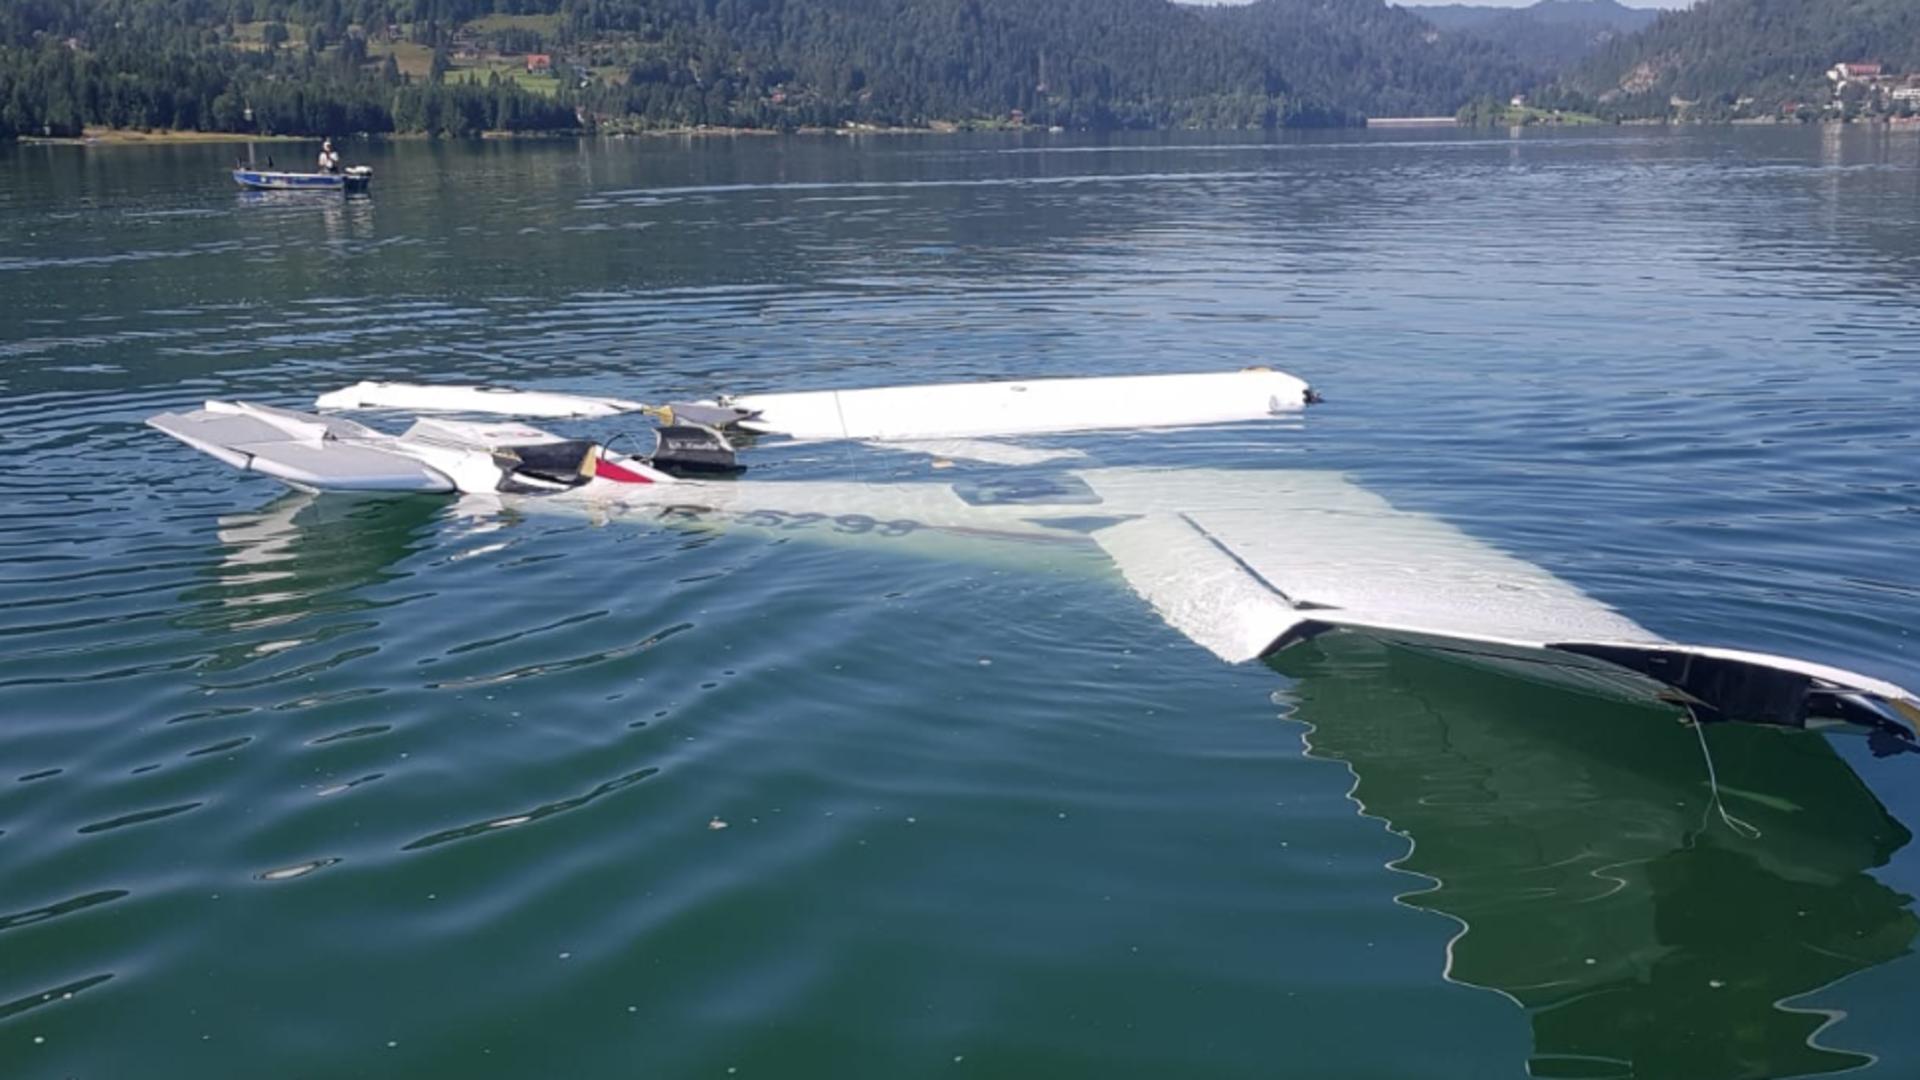 ALERTĂ în Bistrița Năsăud! Un avion ușor s-a prăbușit în lacul Colibița - 2 VICTIME. Pilotul A MURIT